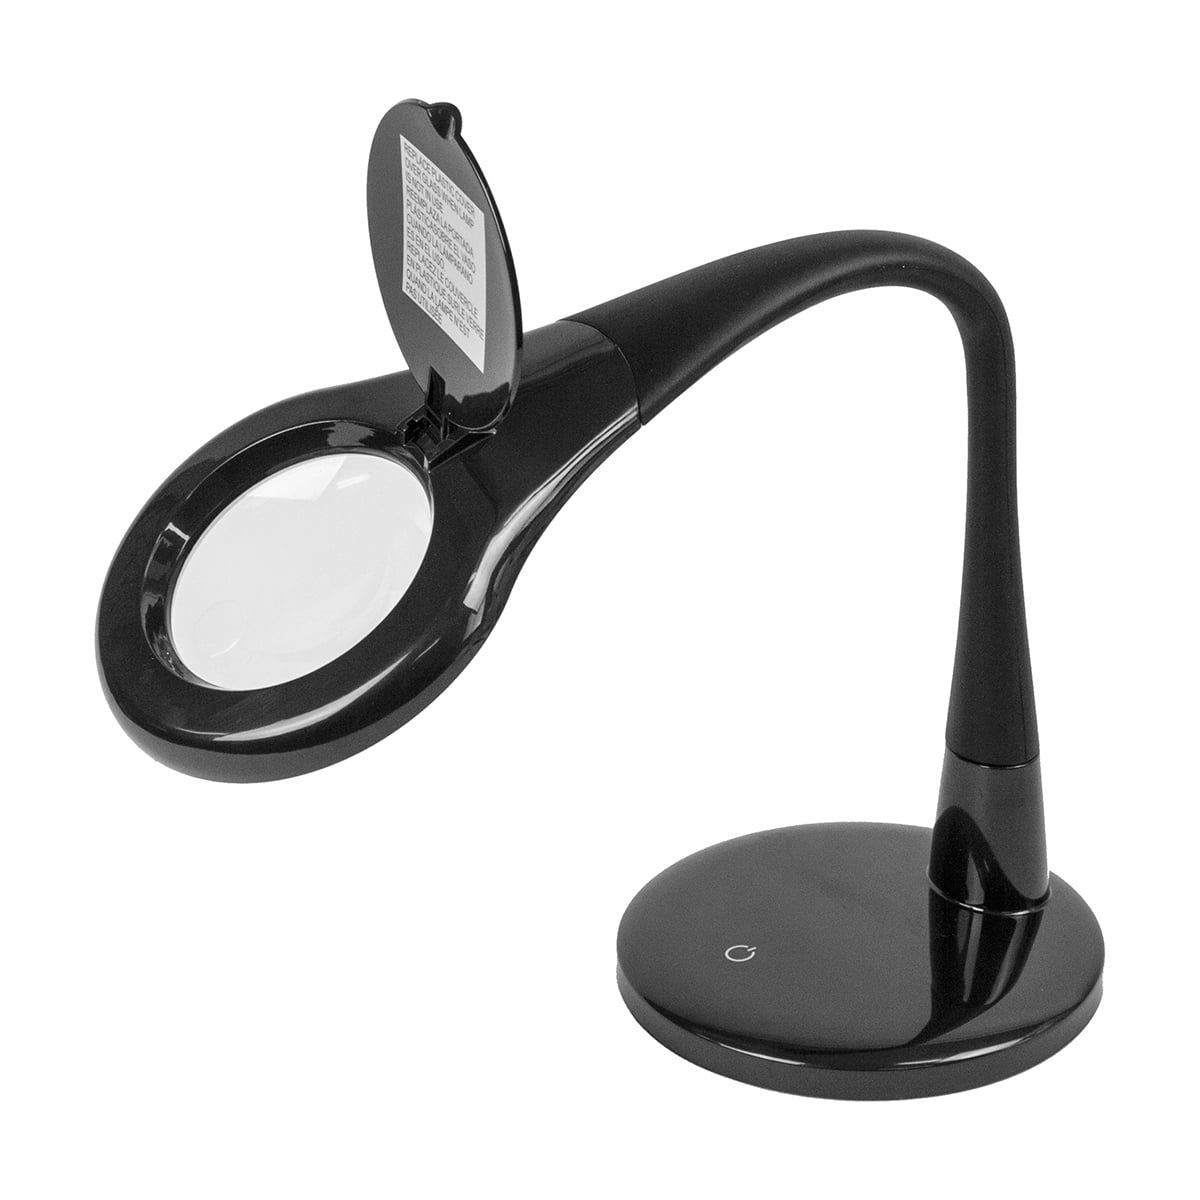 Tensor Magnifying Desk Lamp - Walmart.com - Walmart.com